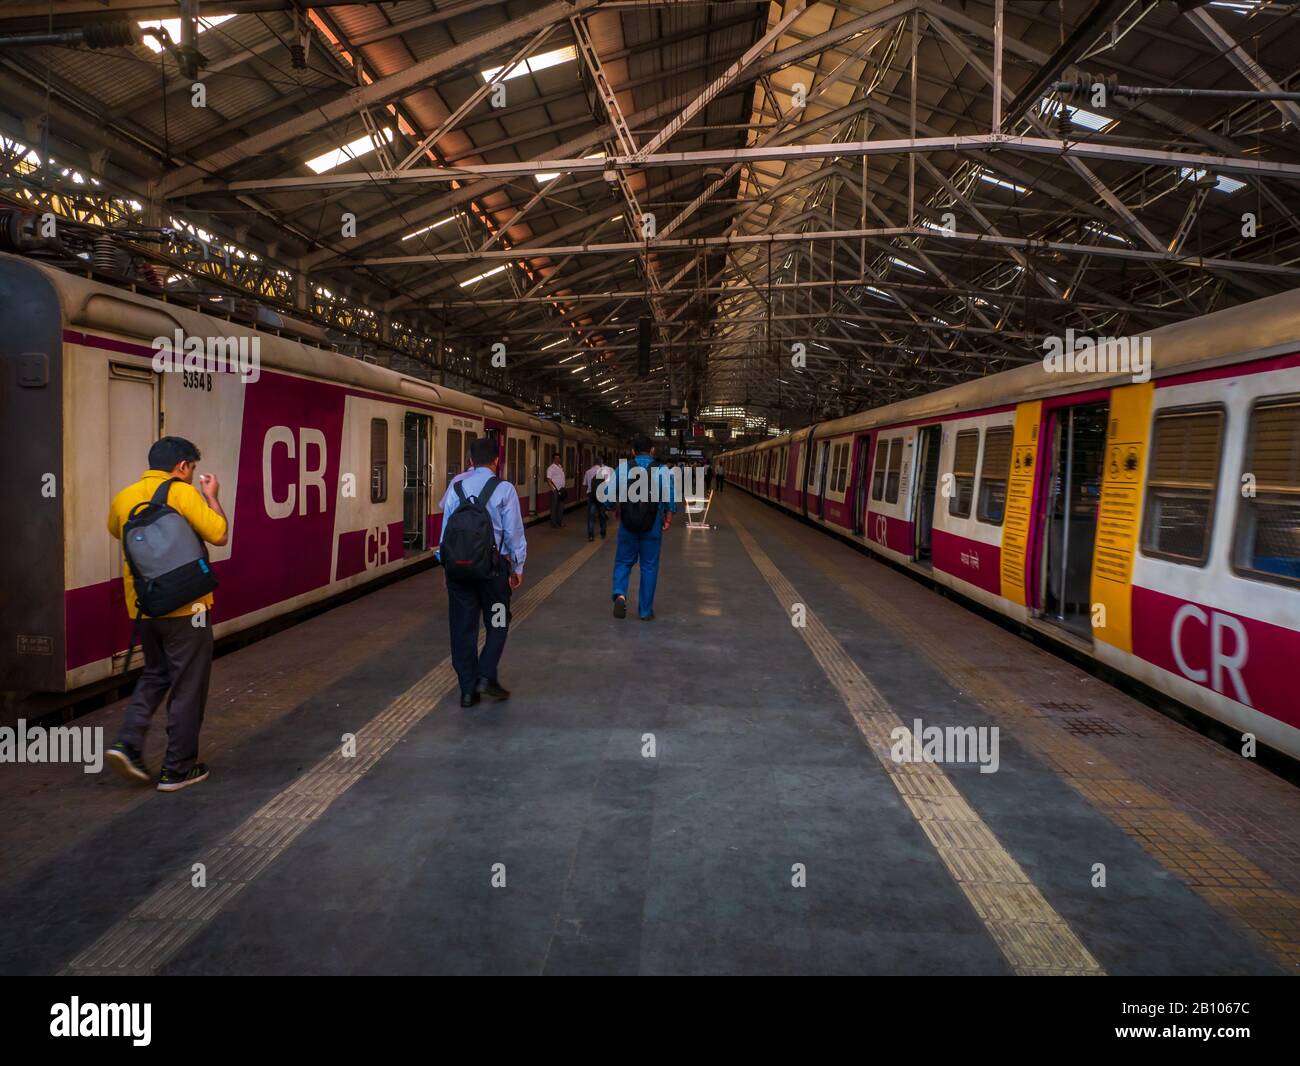 Mumbai, Inde - 18 décembre 2019 : Mumbai Suburban Railway, l'un des systèmes de trains de banlieue les plus actifs au monde ayant le surpeuplement le plus grave Banque D'Images